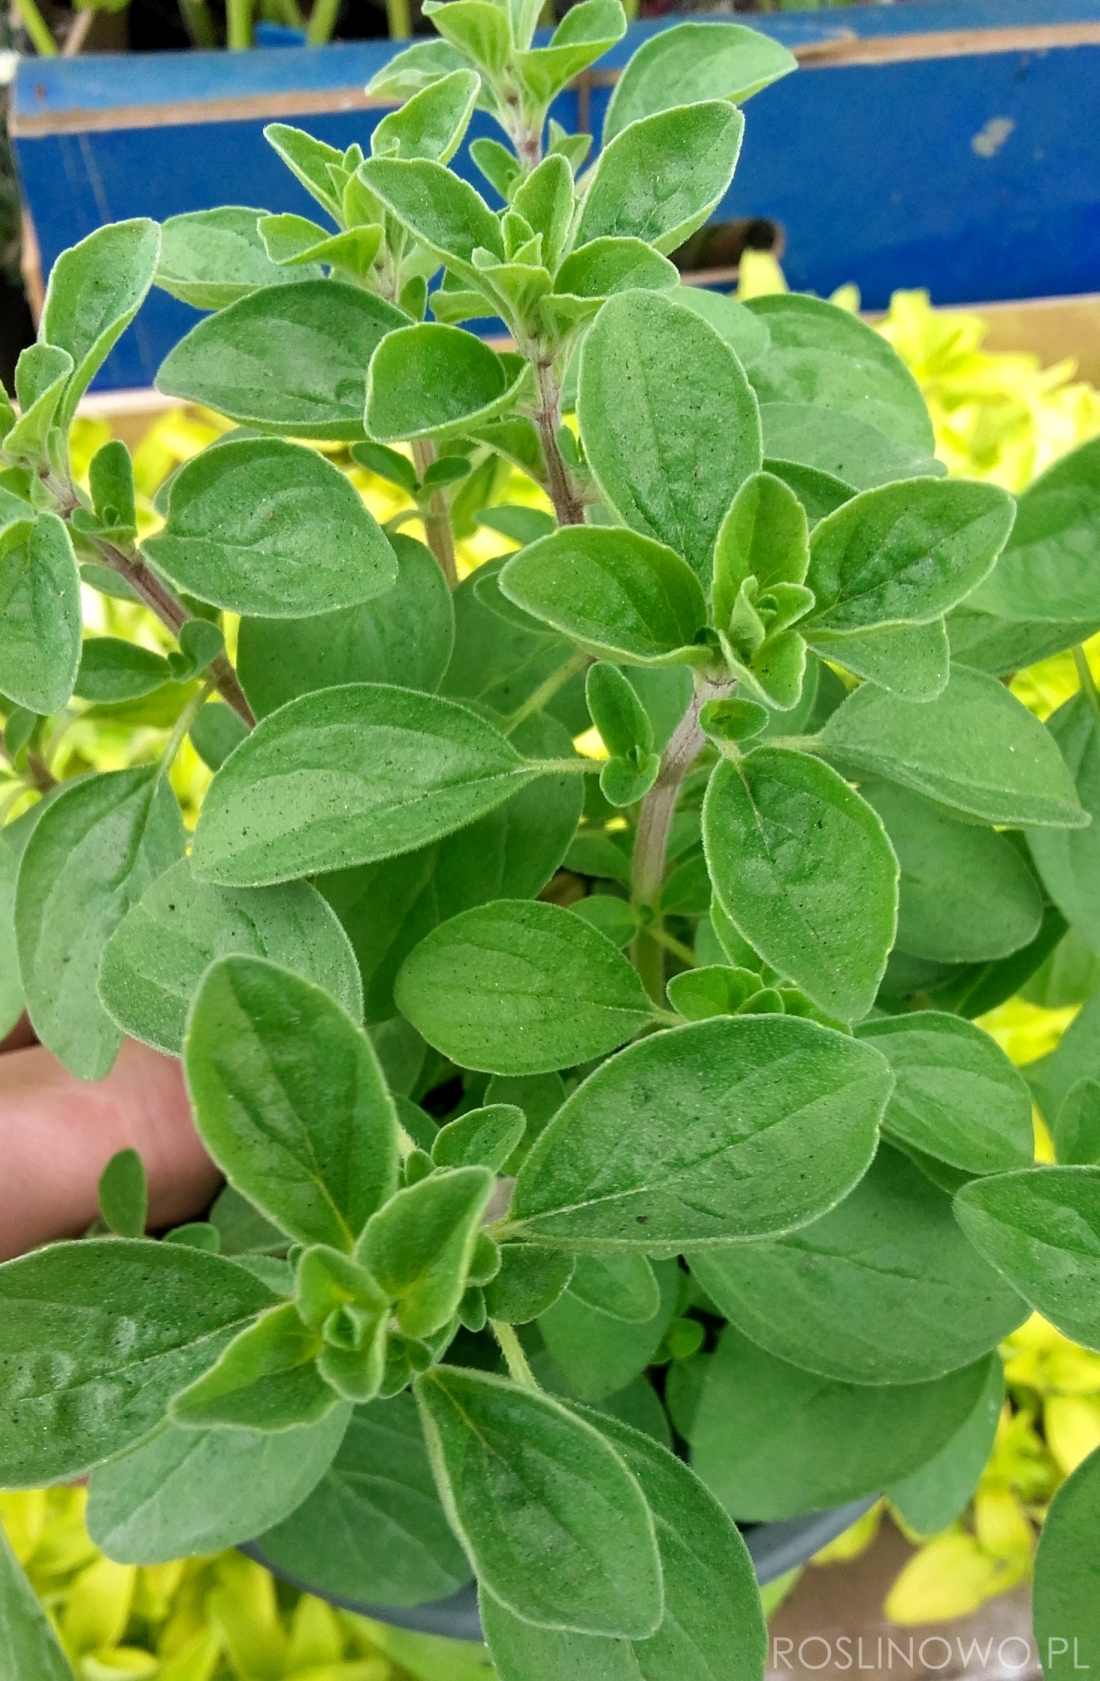 majeranek - roslina do ogrodó ziołowych i do uprawy w donicach i pojemnikach ozdobnych